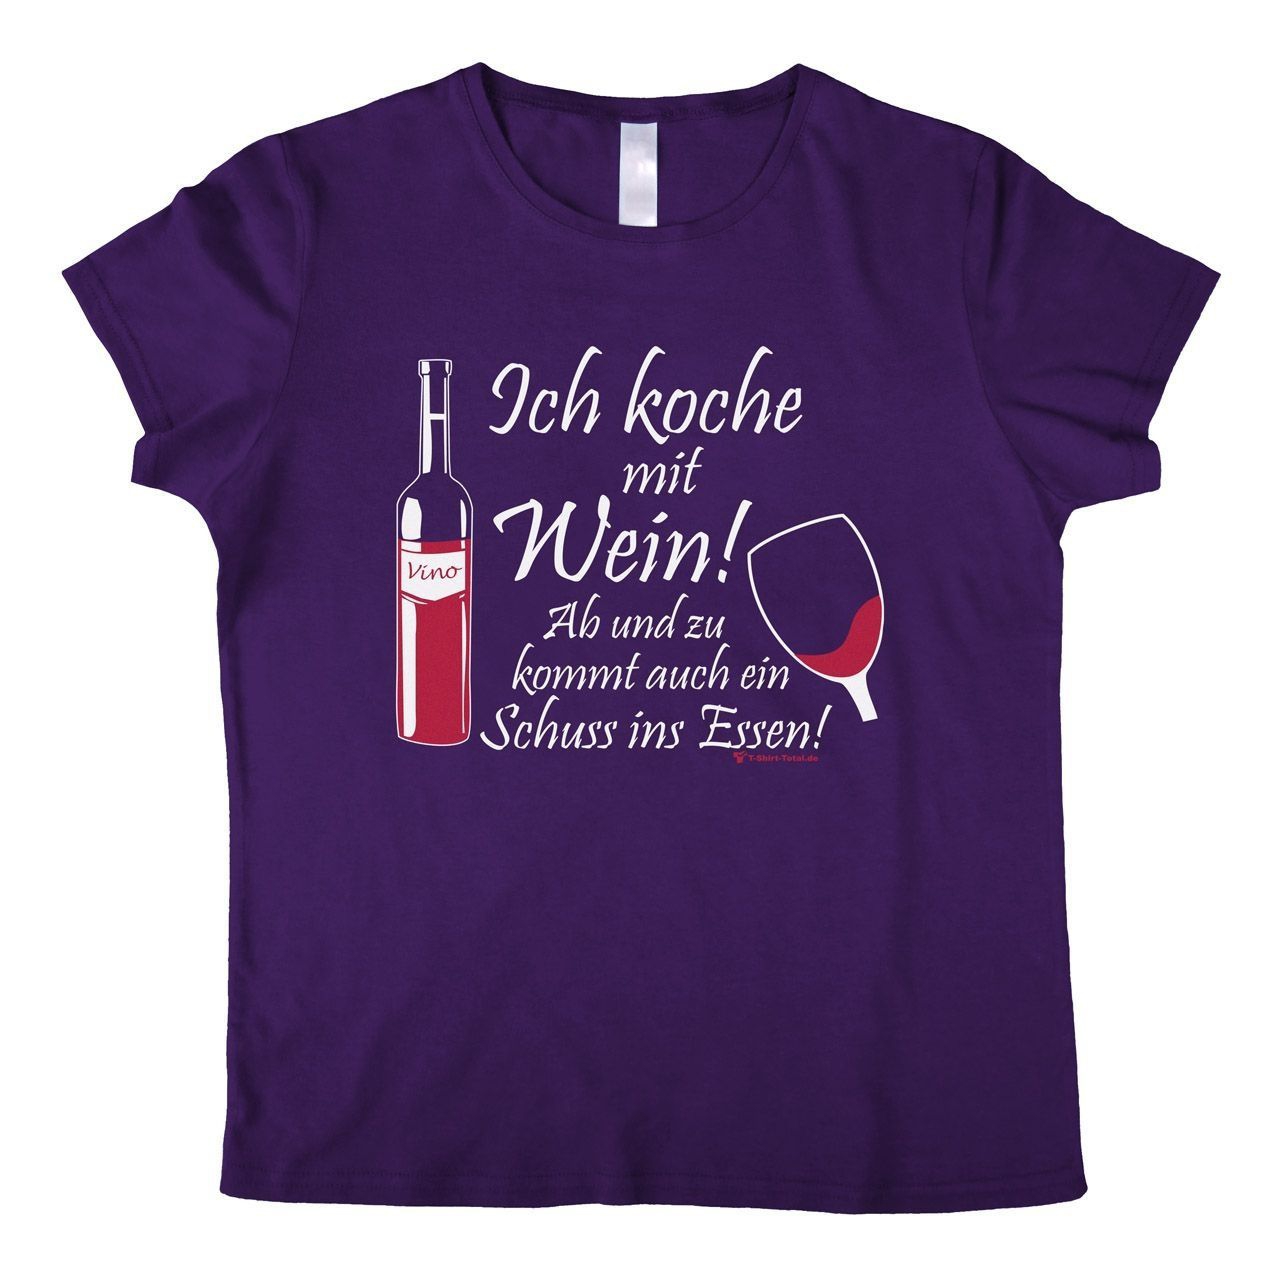 Koche mit Wein Woman T-Shirt lila Large